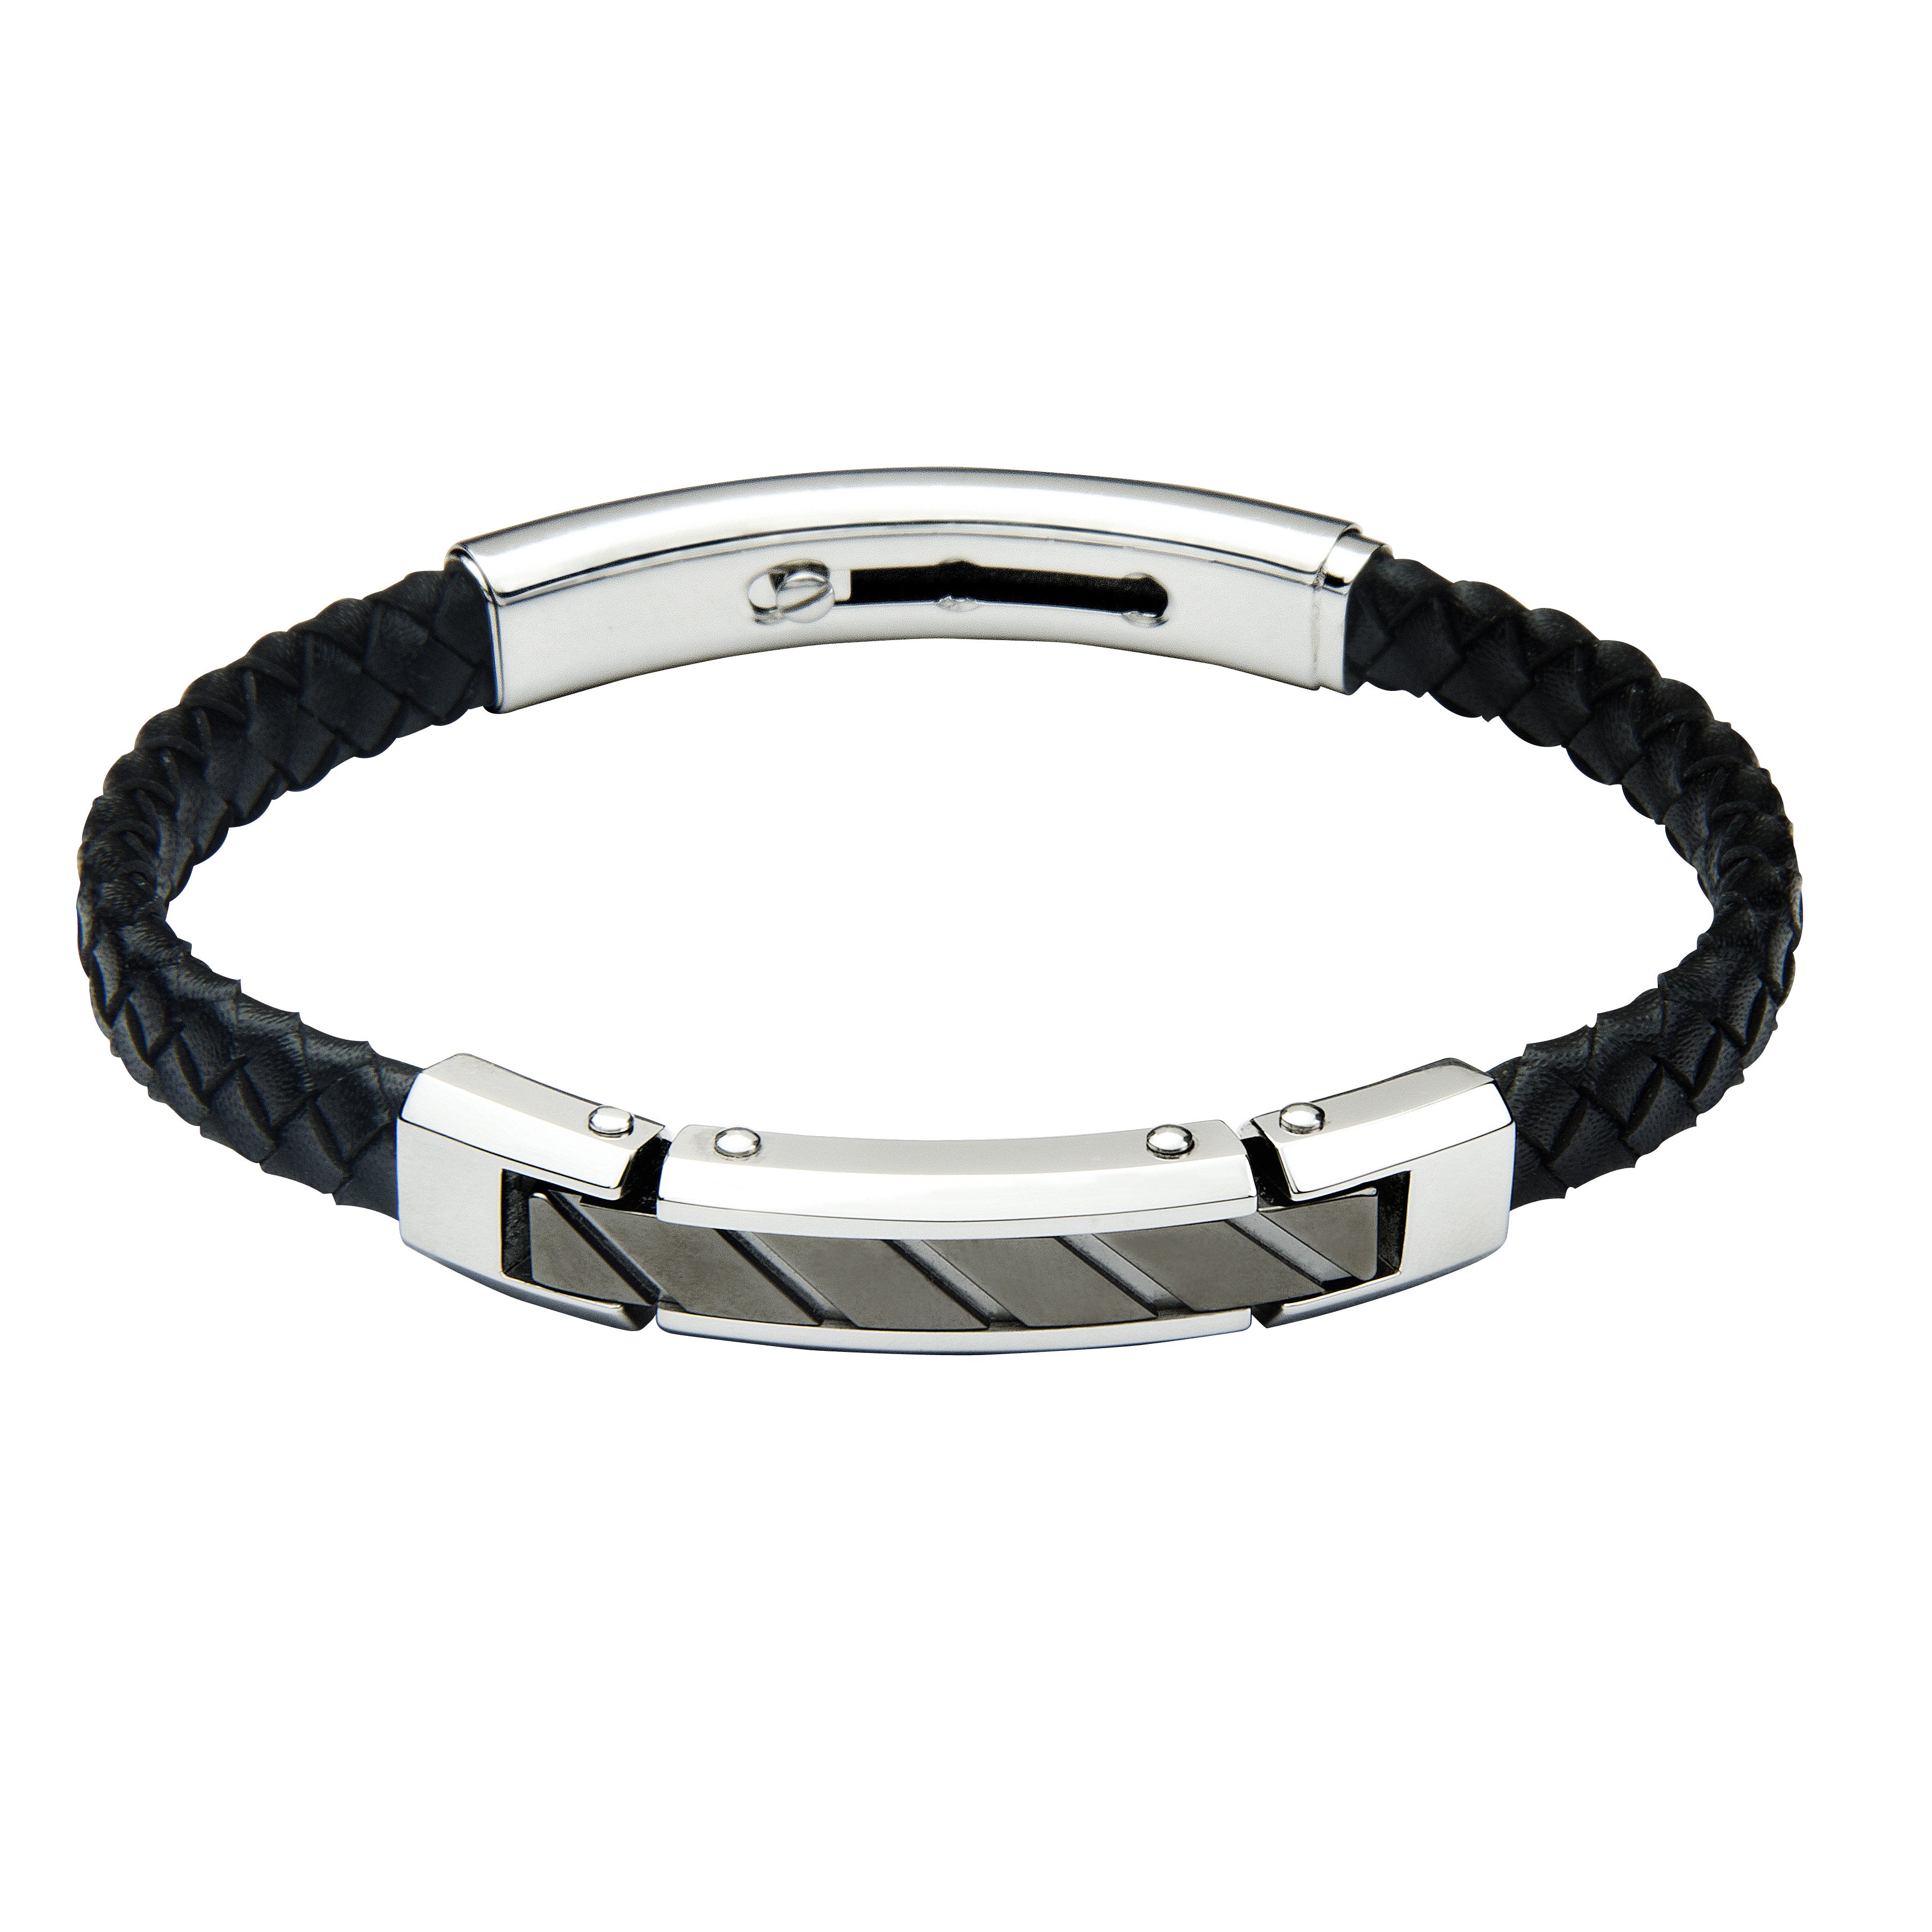 FUB15 leather and steel adjustable bracelet